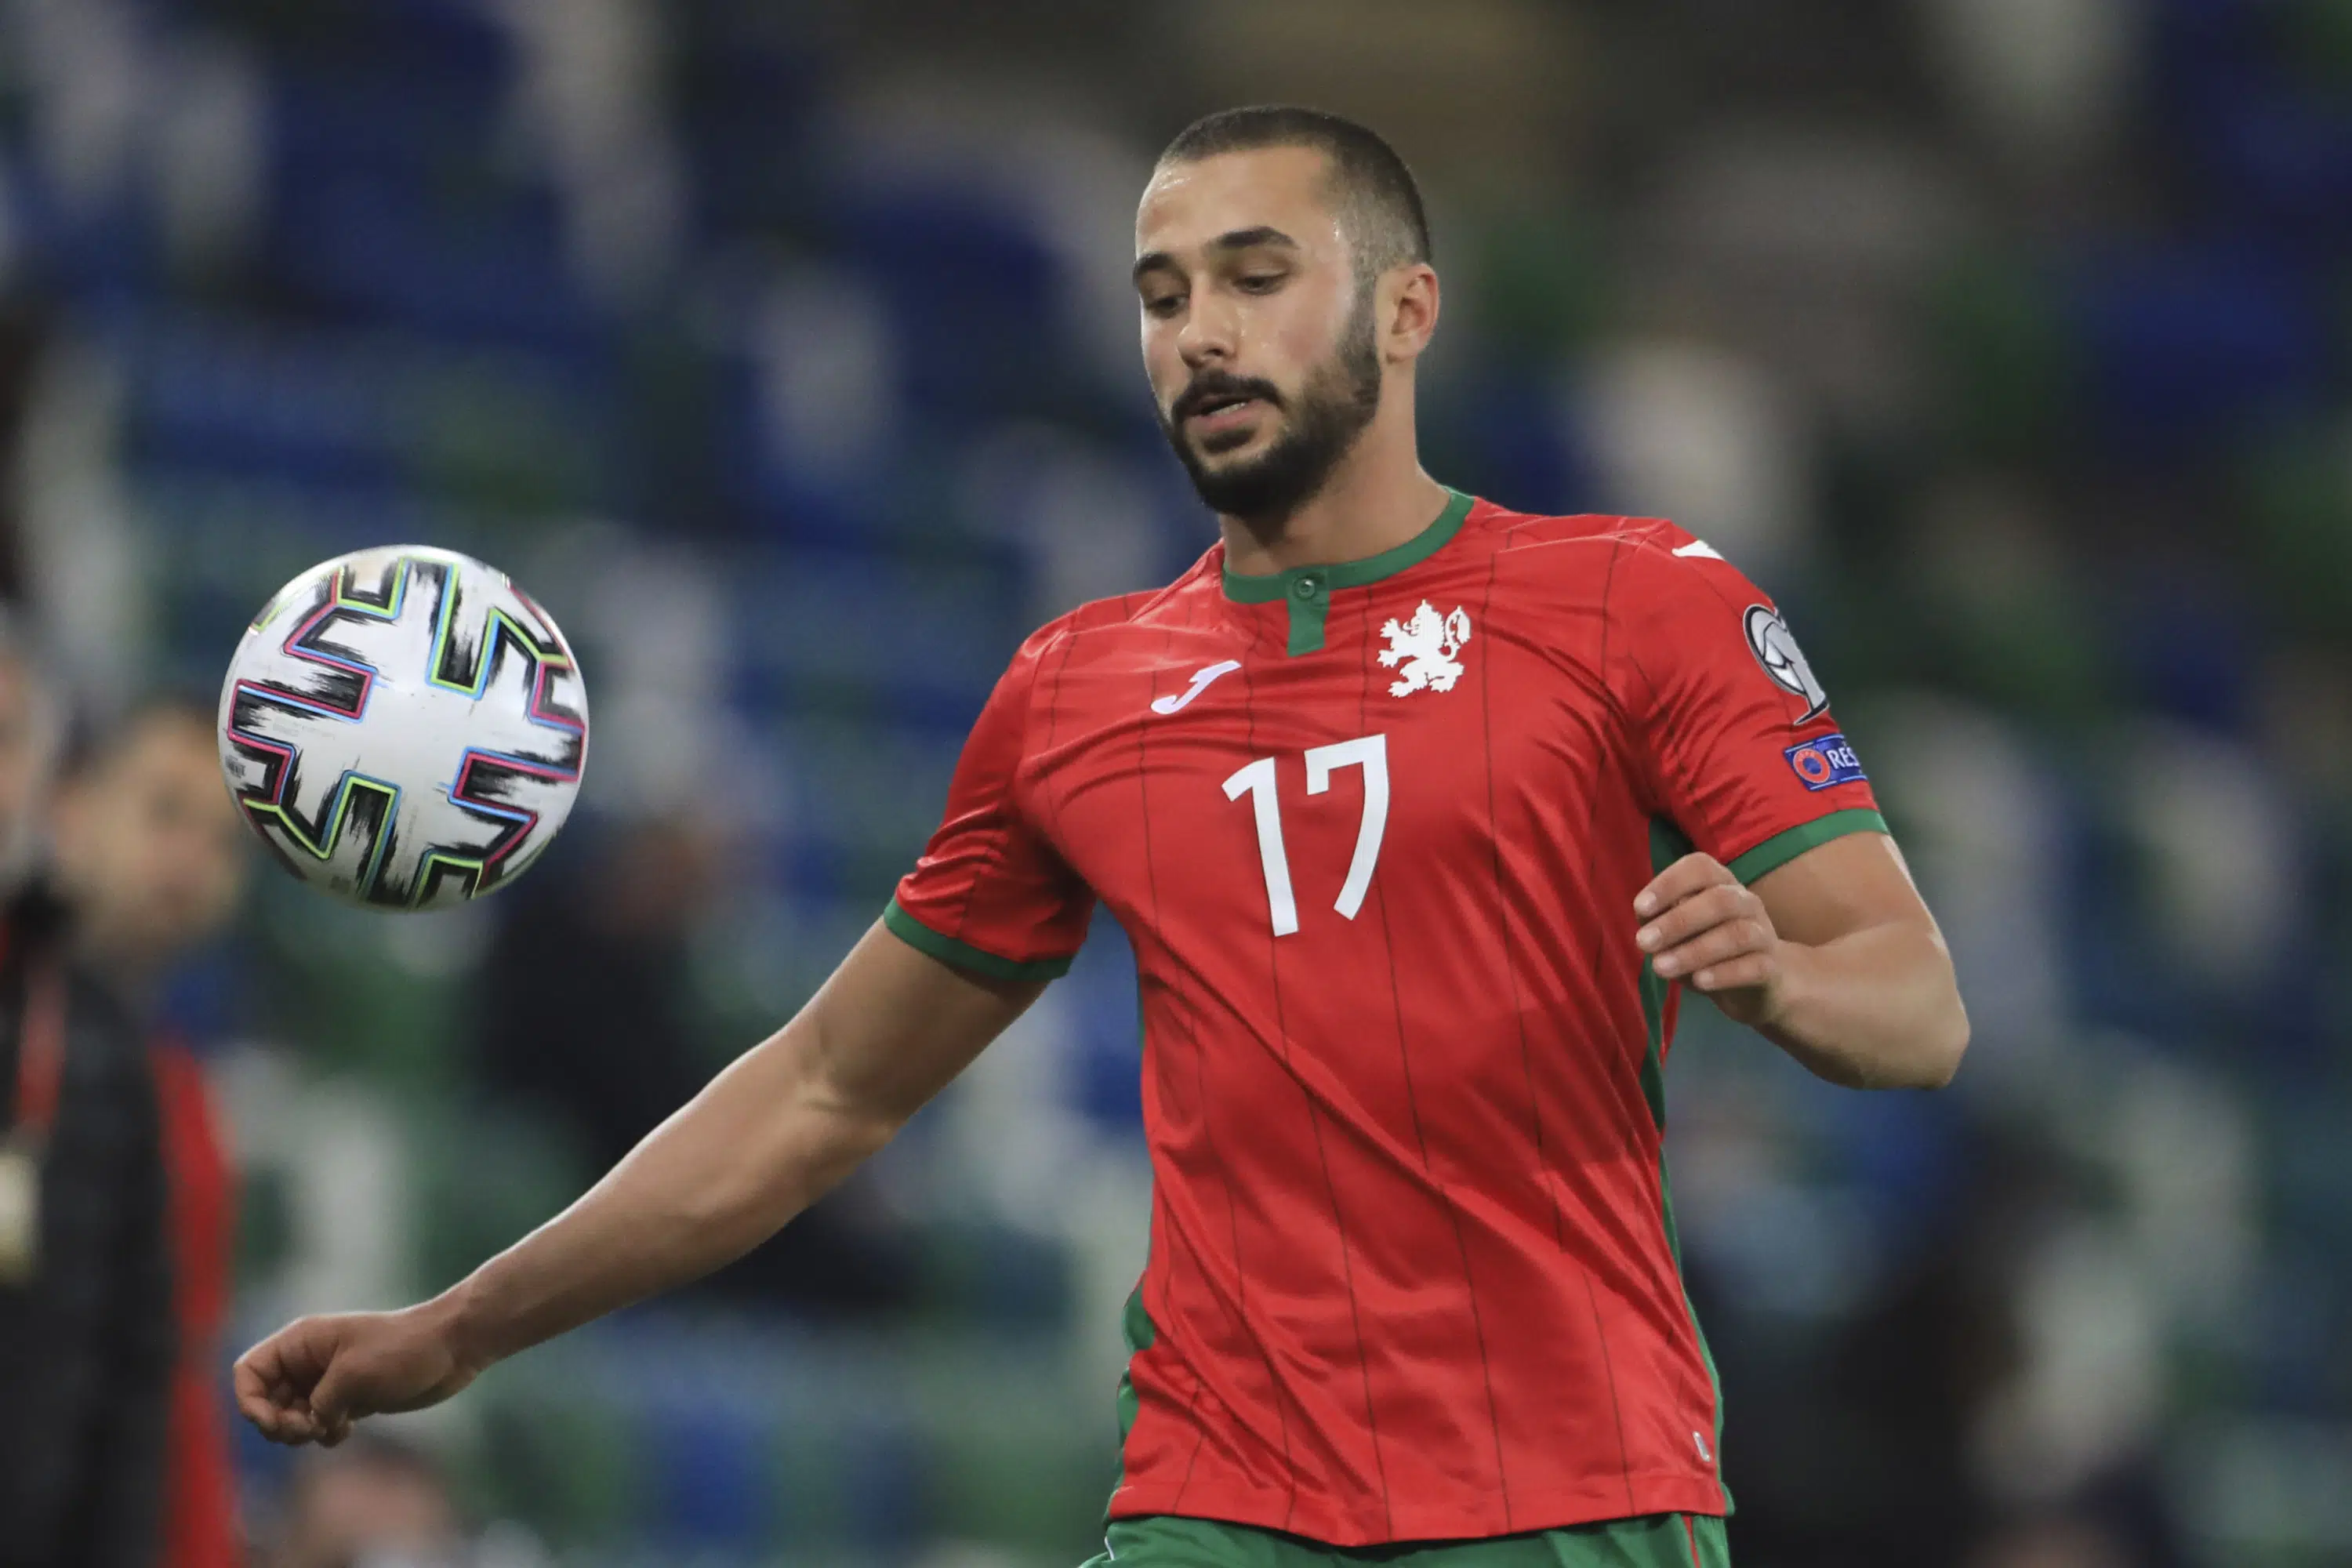 Die Berufung des bulgarischen Fußballspielers Yomov wegen der Dopingsperre wurde im Juni bei einem Sportgericht eingereicht